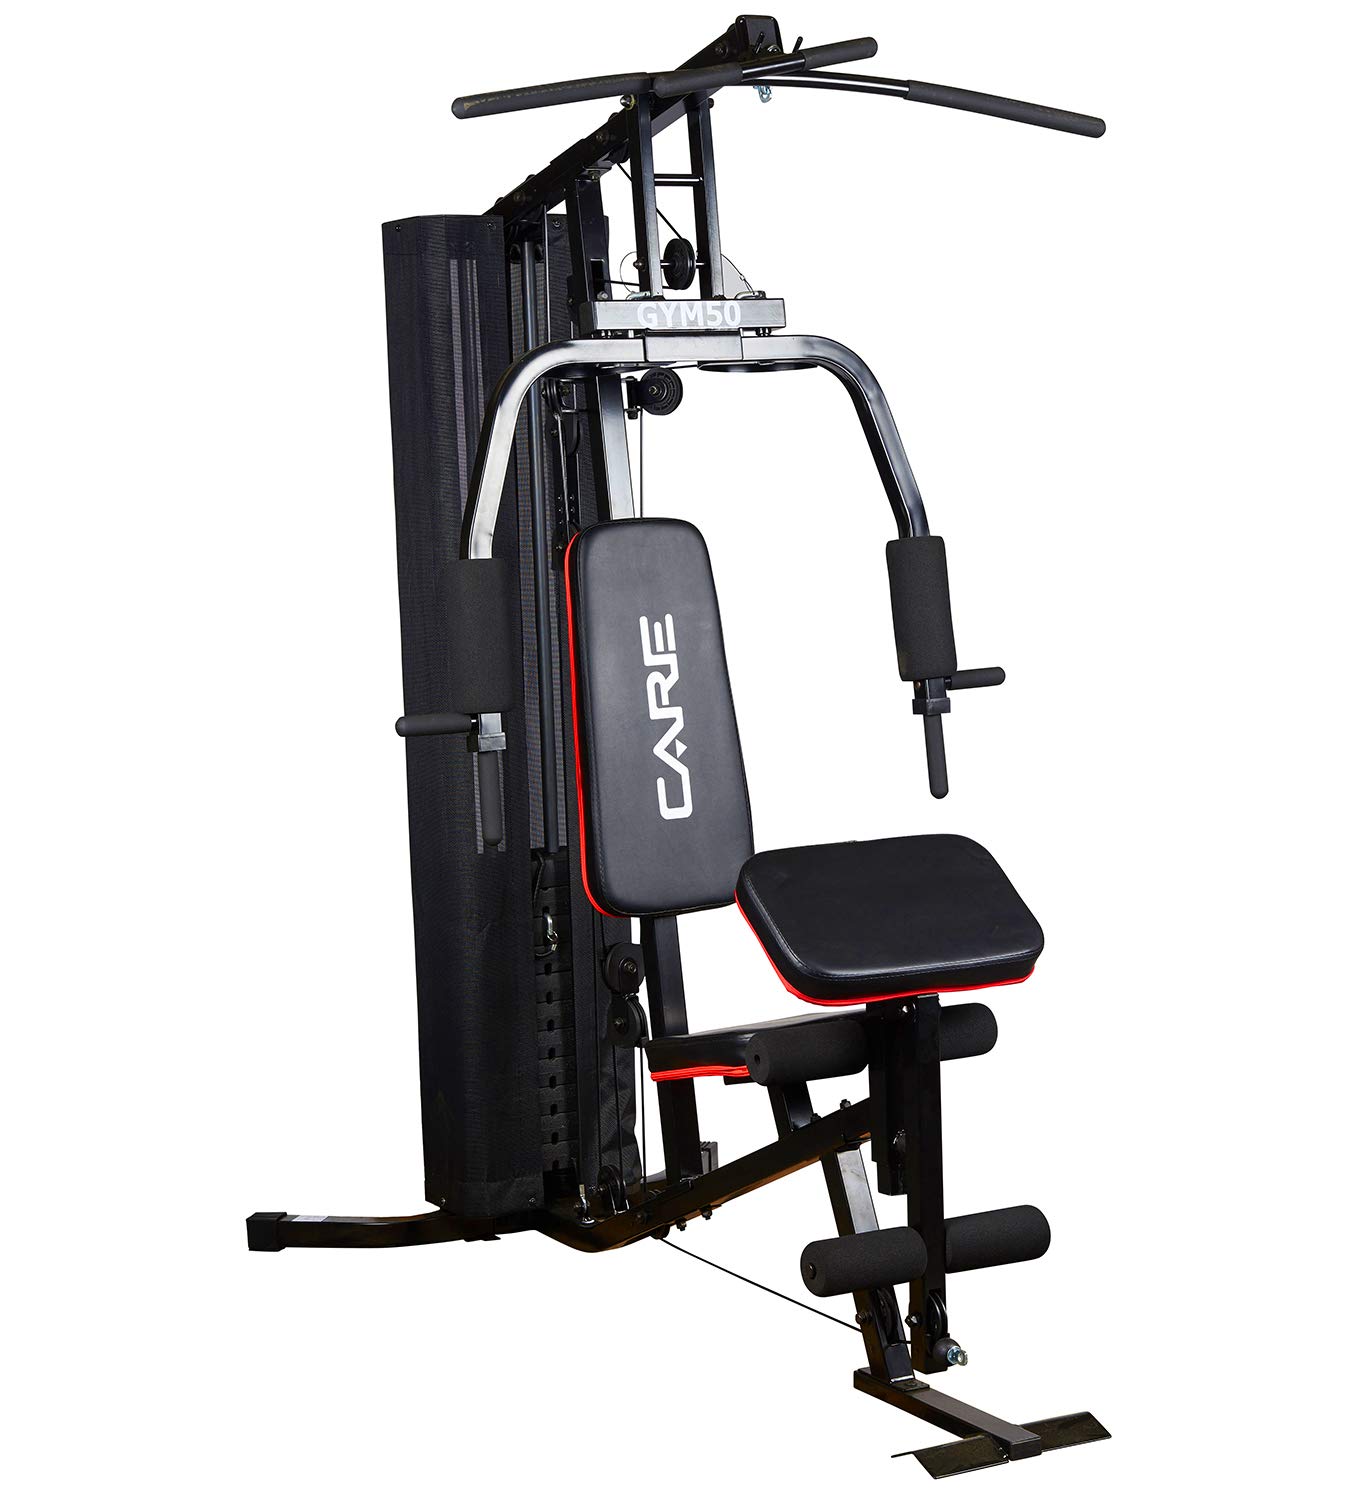 Care-Gym 50-Bodybuilding-Presse-Multifunktionale Muskelentwicklungsstation-Arbeite an Brust, Rücken, Armen, Oberschenkeln und Rückenmuskeln.